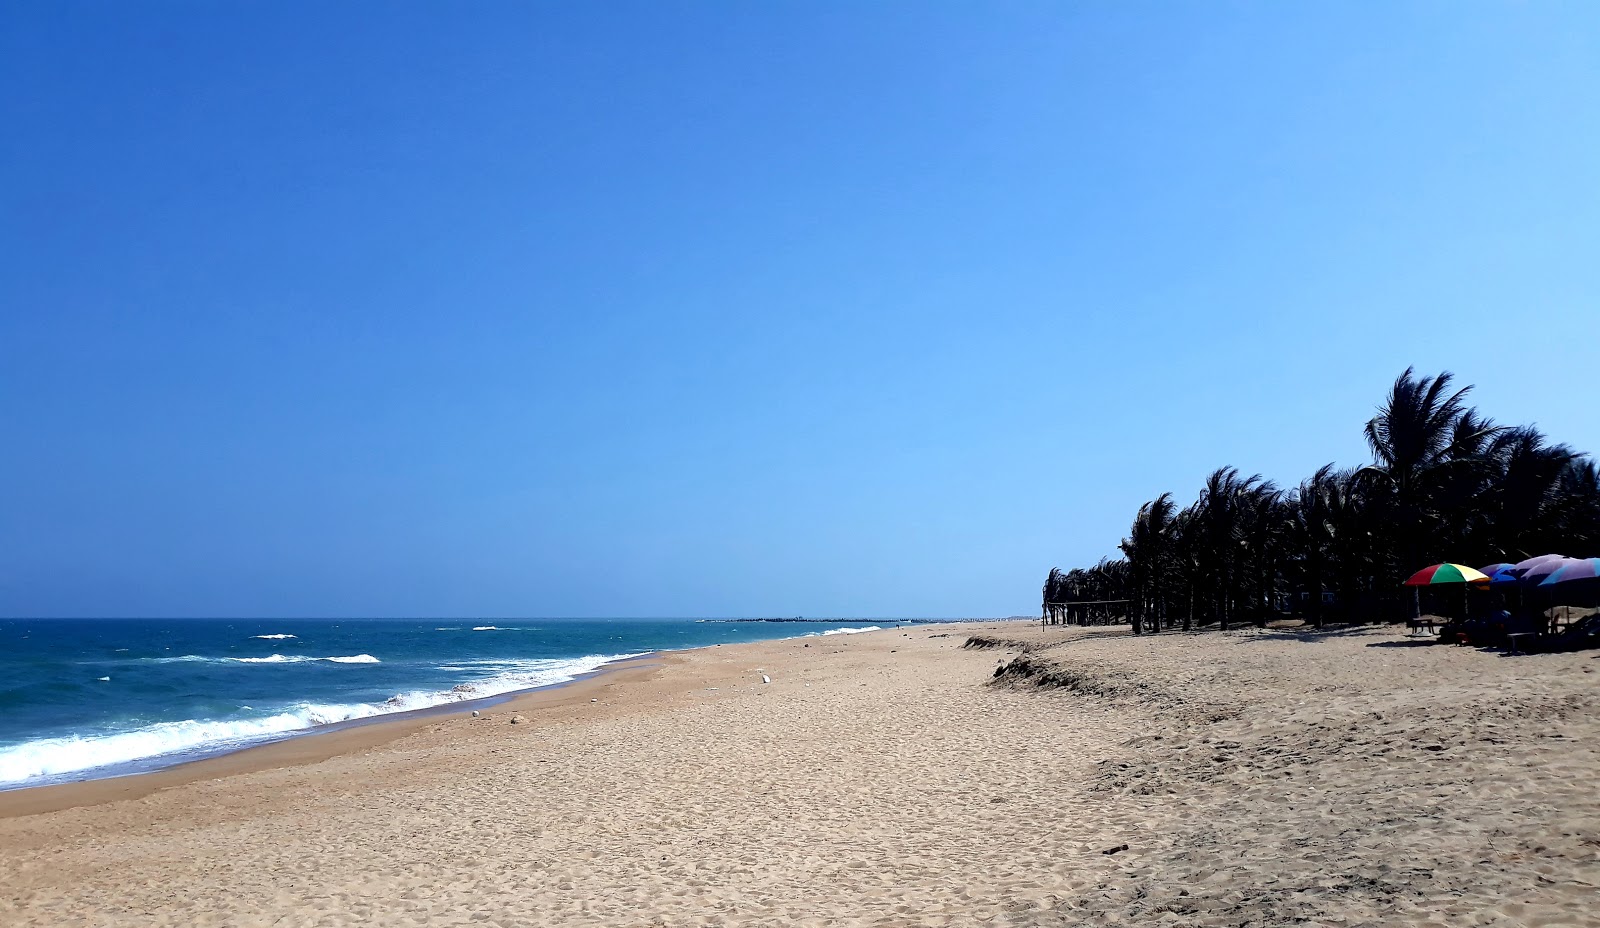 Tuy Hoa Beach'in fotoğrafı parlak kum yüzey ile